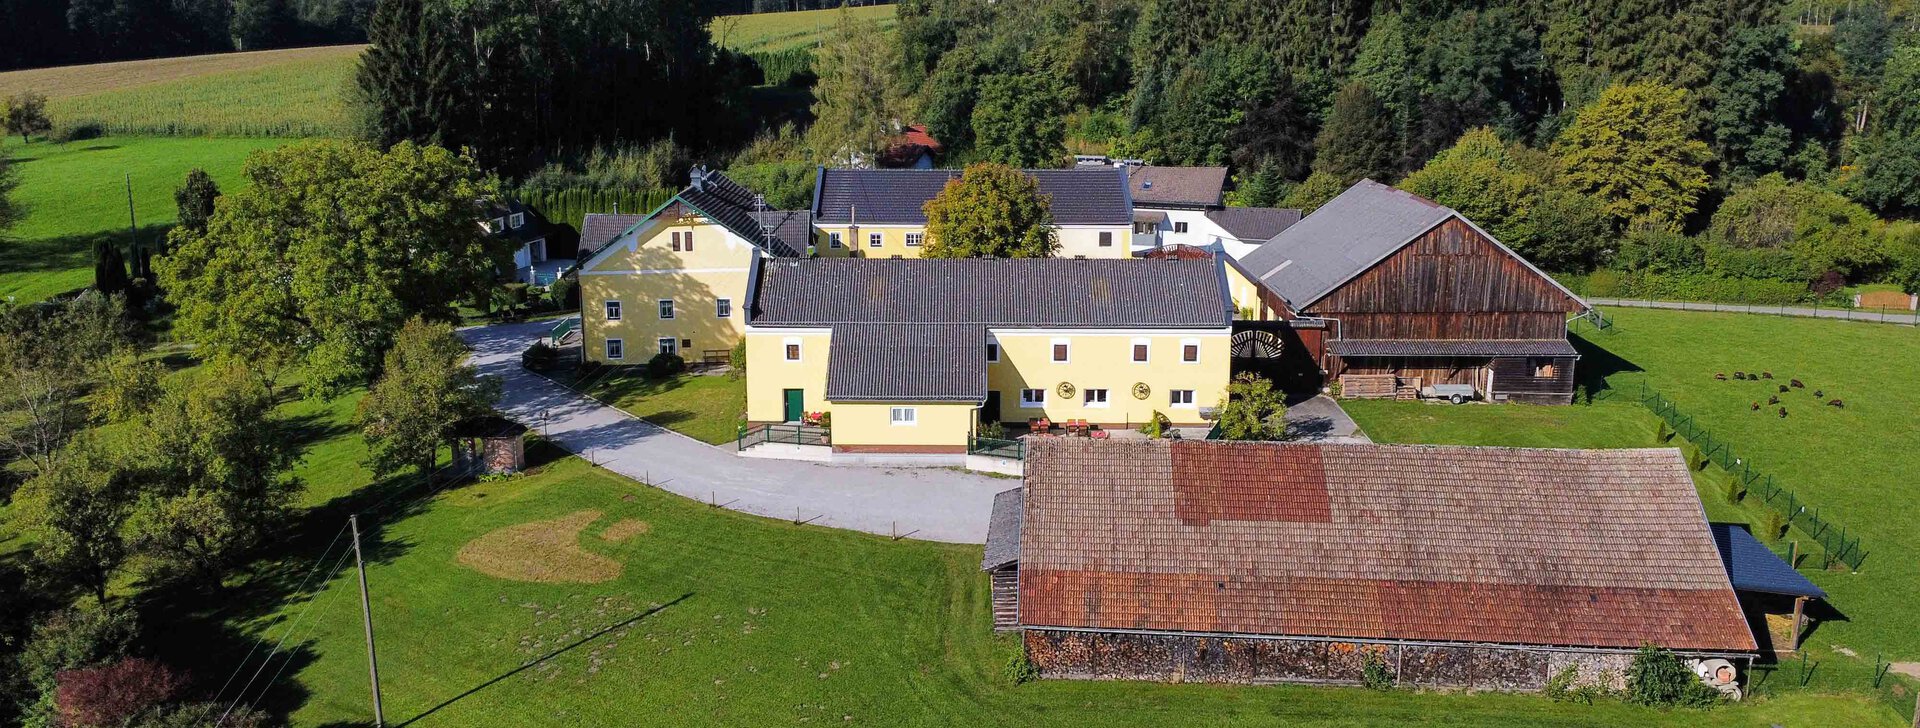 Drohnenbild, Immobilie kaufen, Vierseithof in Schalchen | © HausBauHaus GmbH